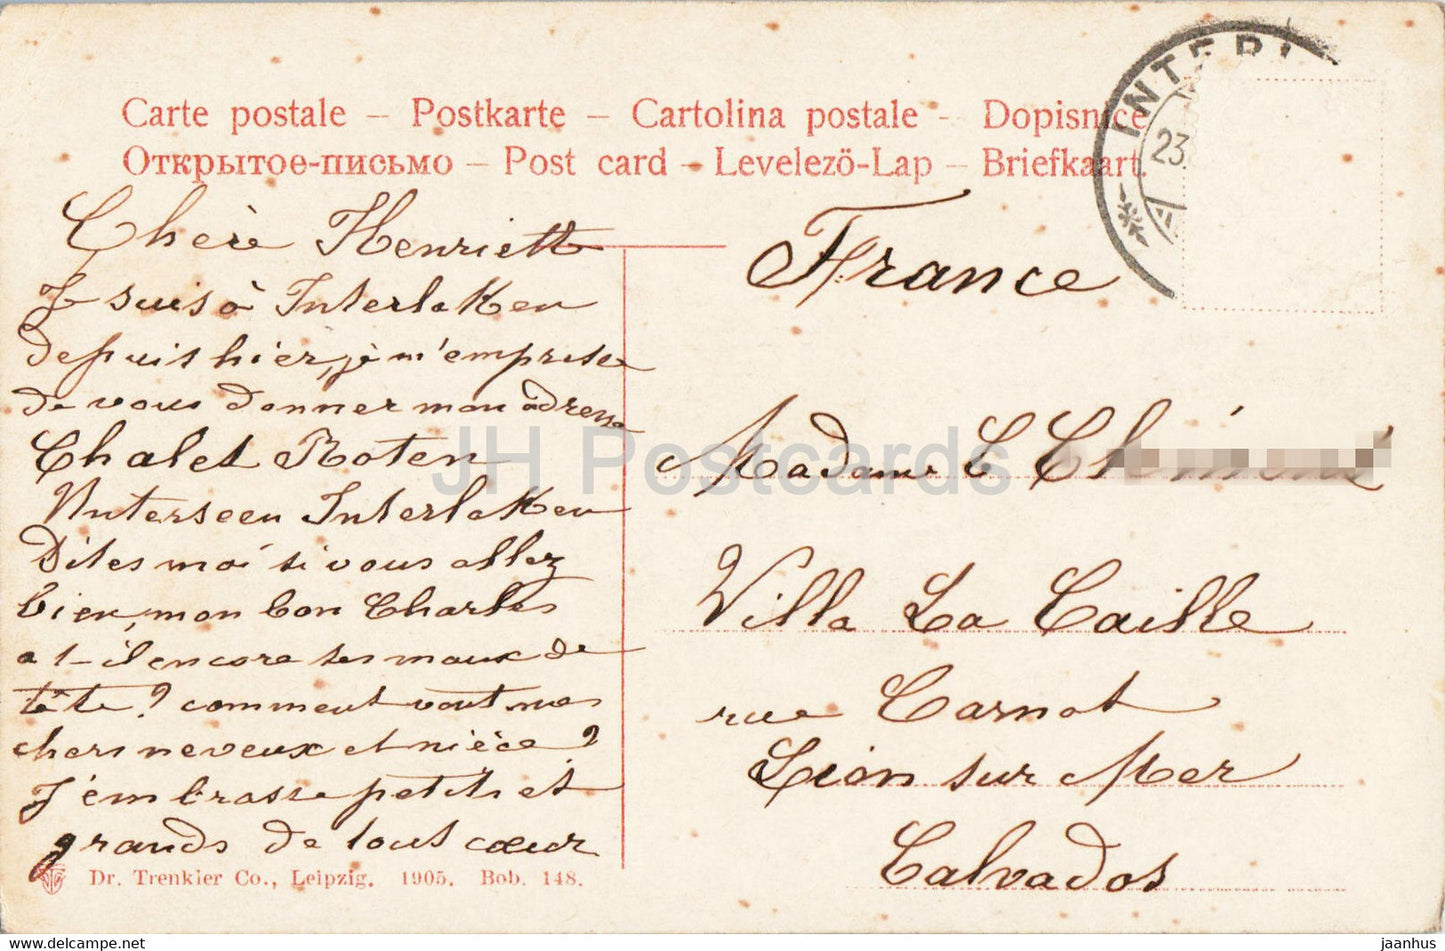 Interlaken - Marktgasse - alte Postkarte - 1905 - Schweiz - gebraucht